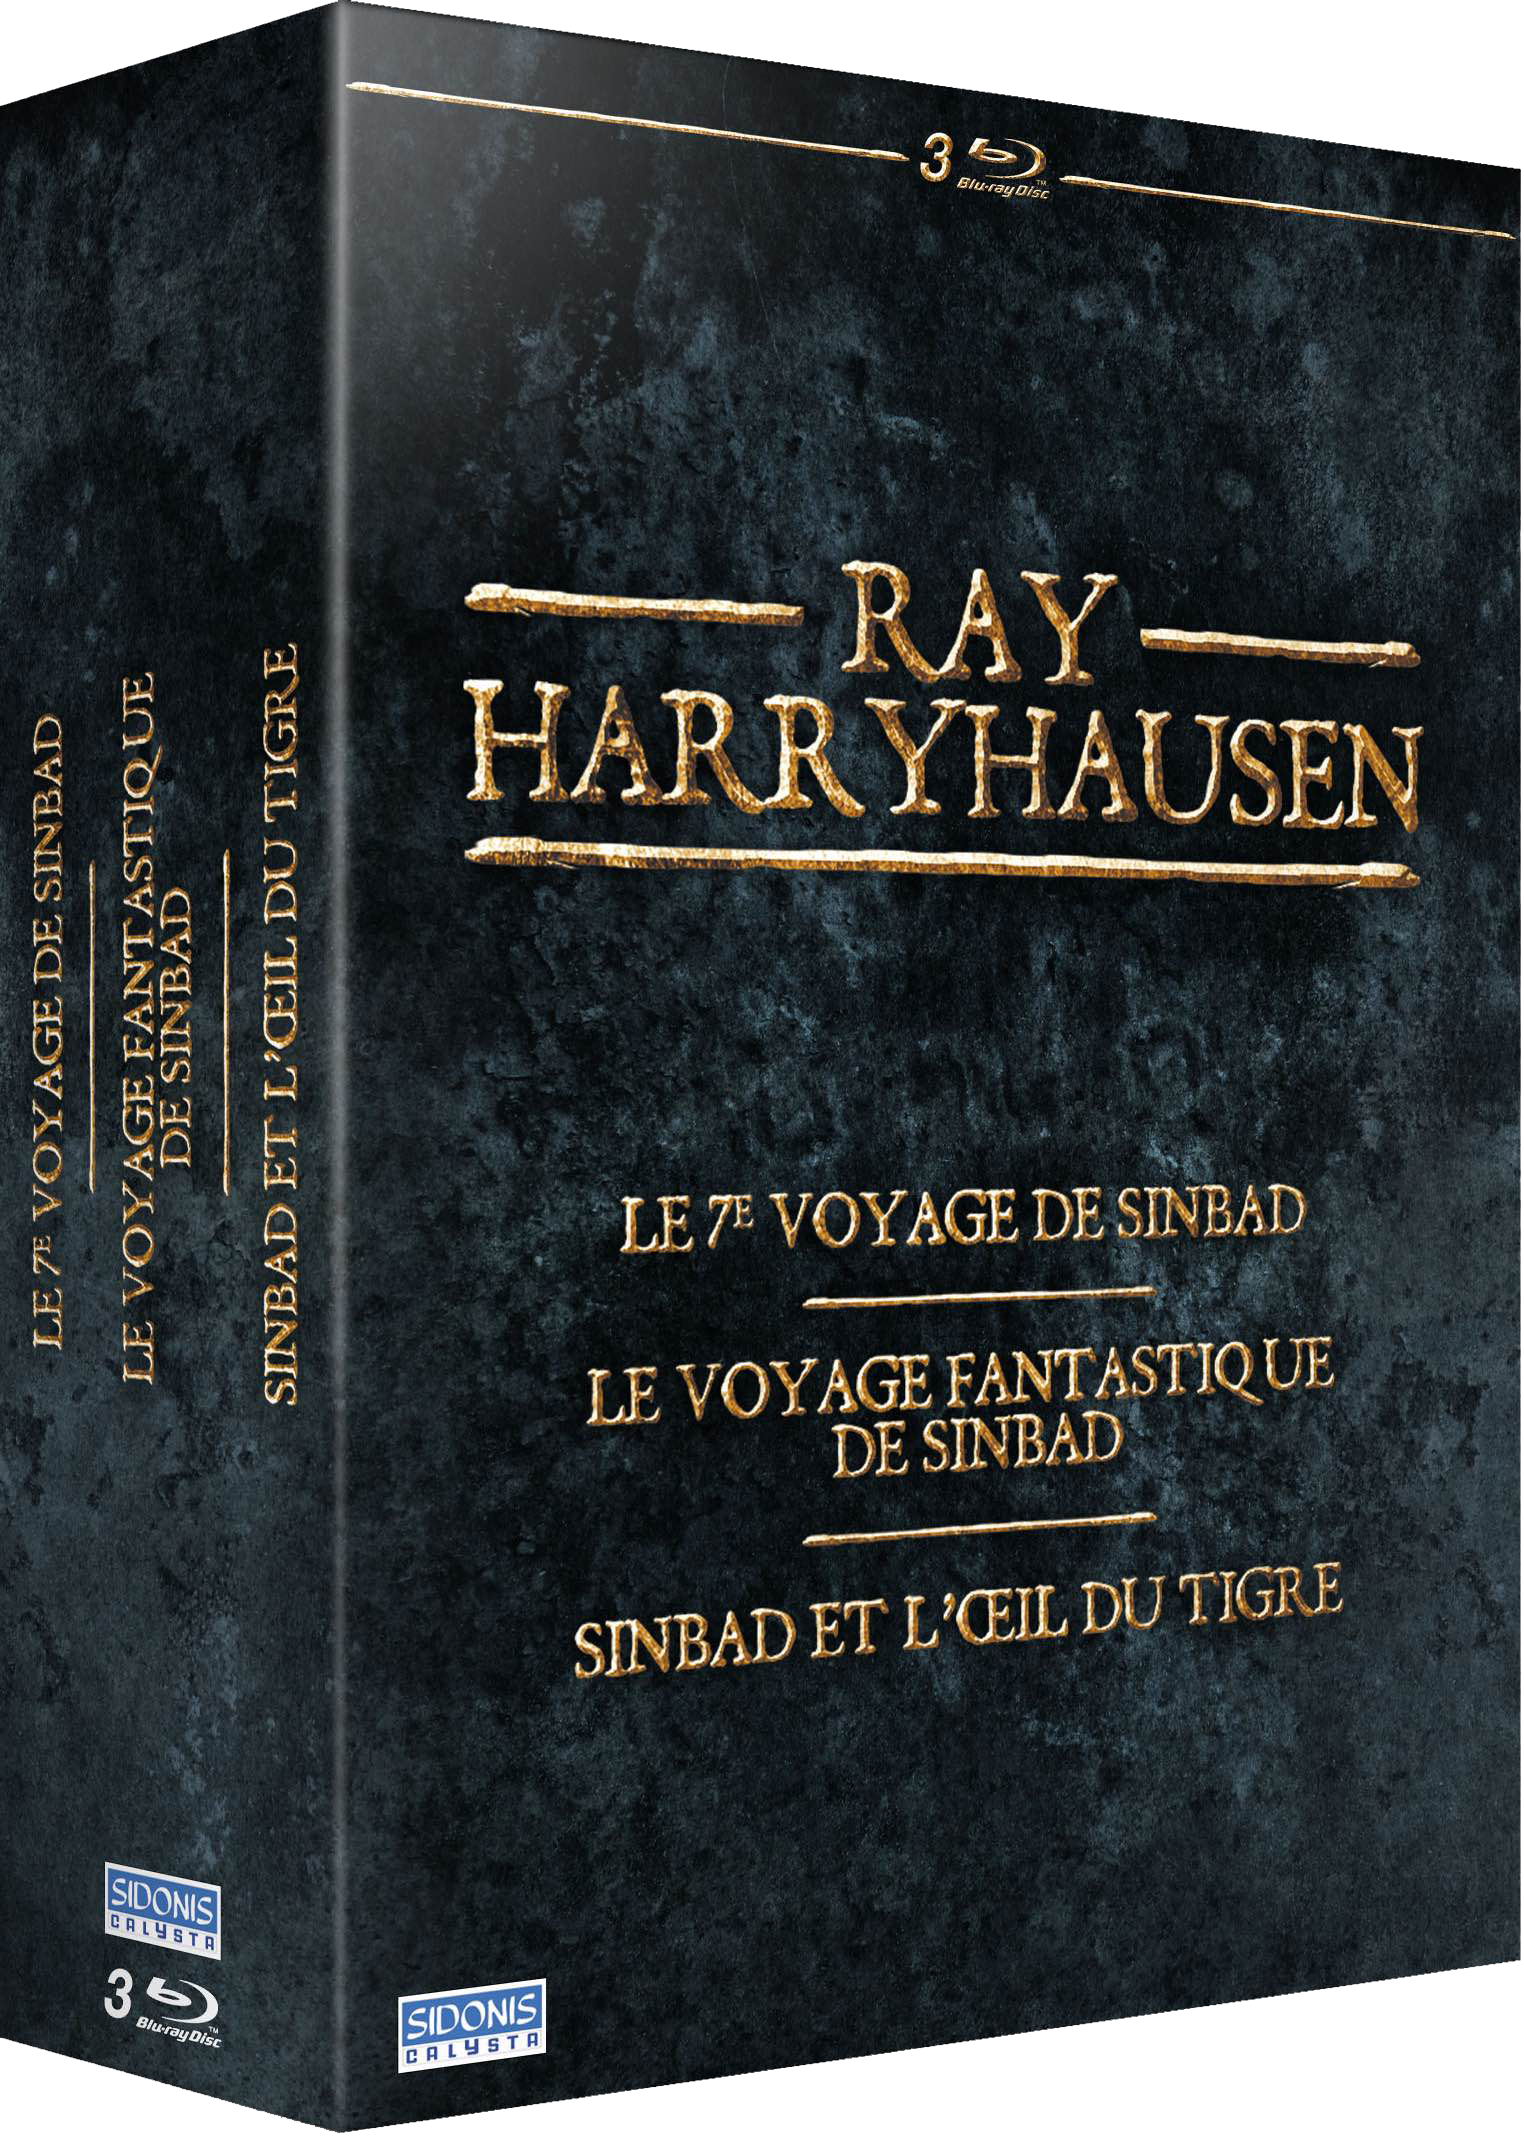 Ray Harryhausen - Le 7ème Voyage de Sinbad + Le Voyage Fantastique de Sinbad + Sinbad et l'Oeil du Tigre - Blu-ray